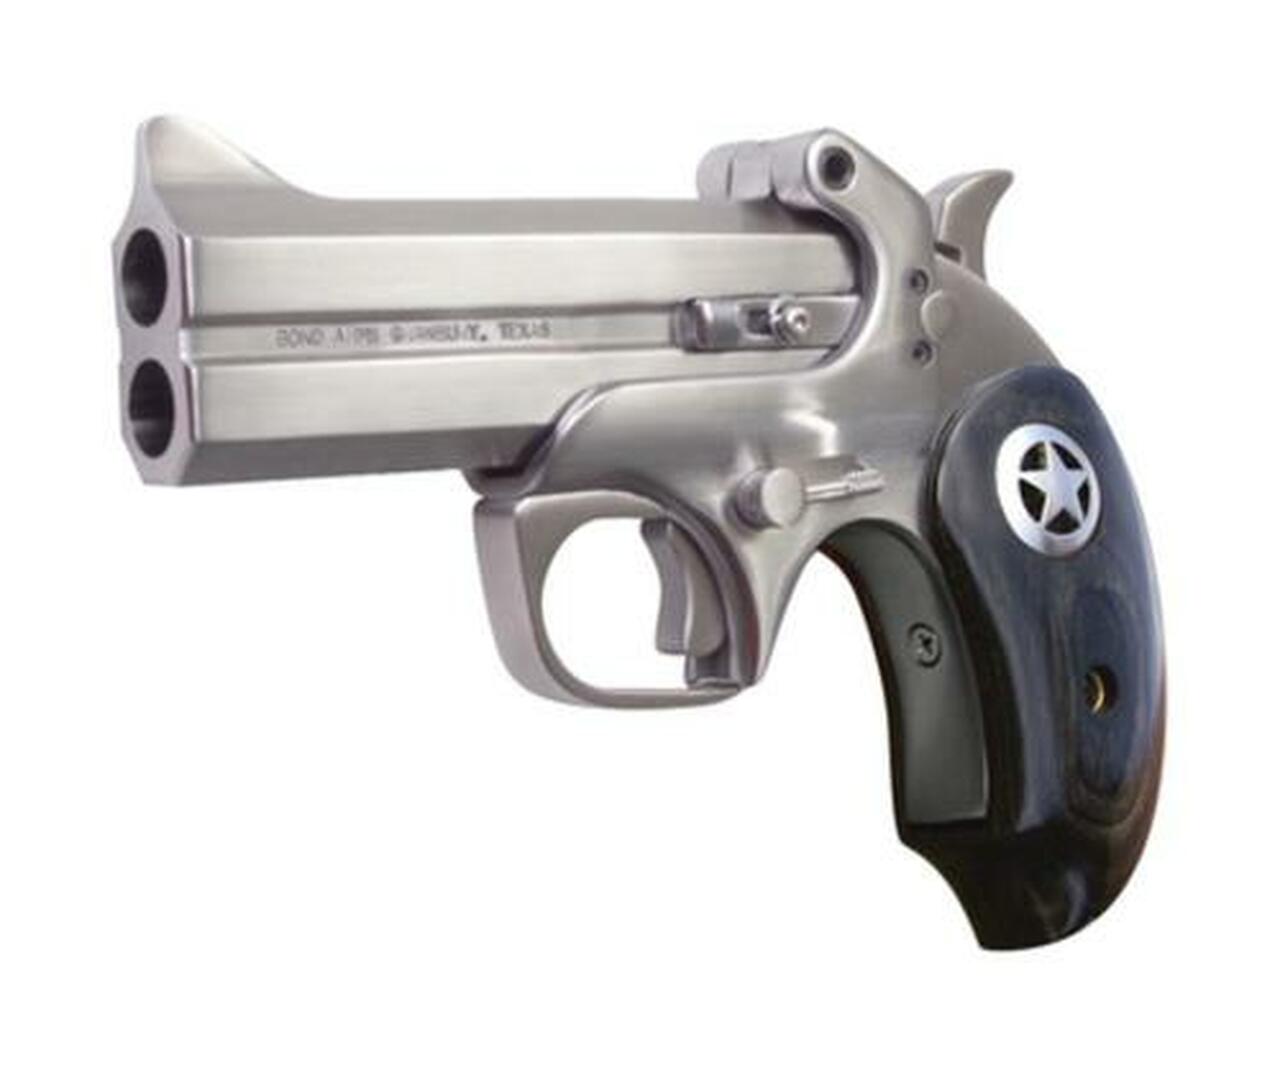 Image of Bond Arms Ranger II .45 Colt/.410 4.25" Barrel, Matte Stainless Steel Finish, Black Ash Star Grip, Trigger Guard